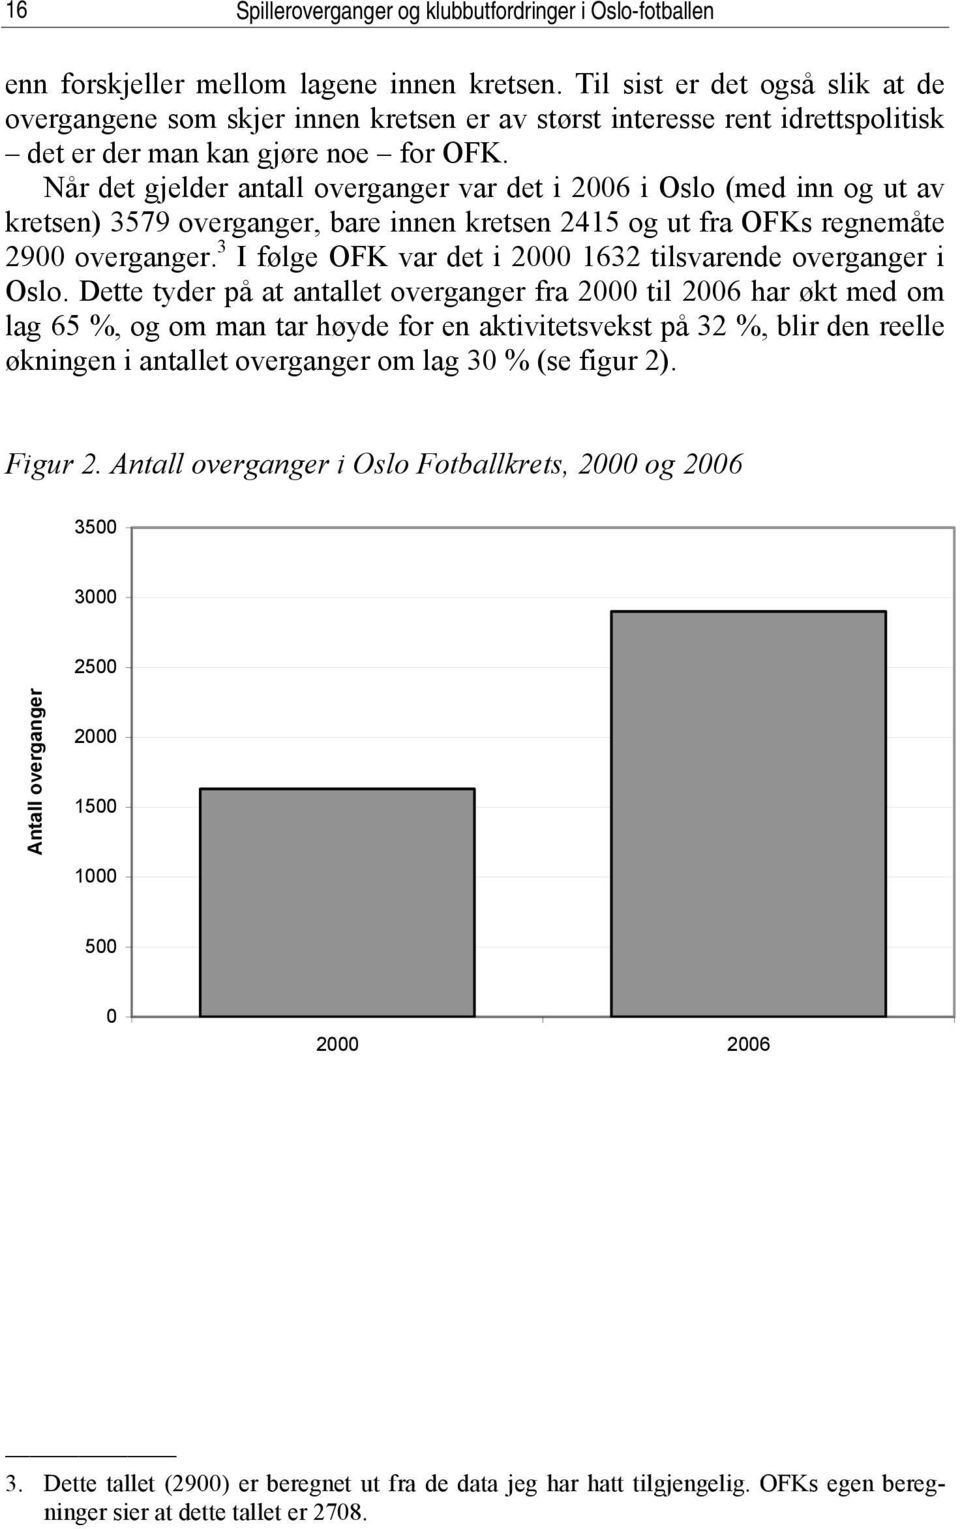 Når det gjelder antall overganger var det i 2006 i Oslo (med inn og ut av kretsen) 3579 overganger, bare innen kretsen 2415 og ut fra OFKs regnemåte 2900 overganger.